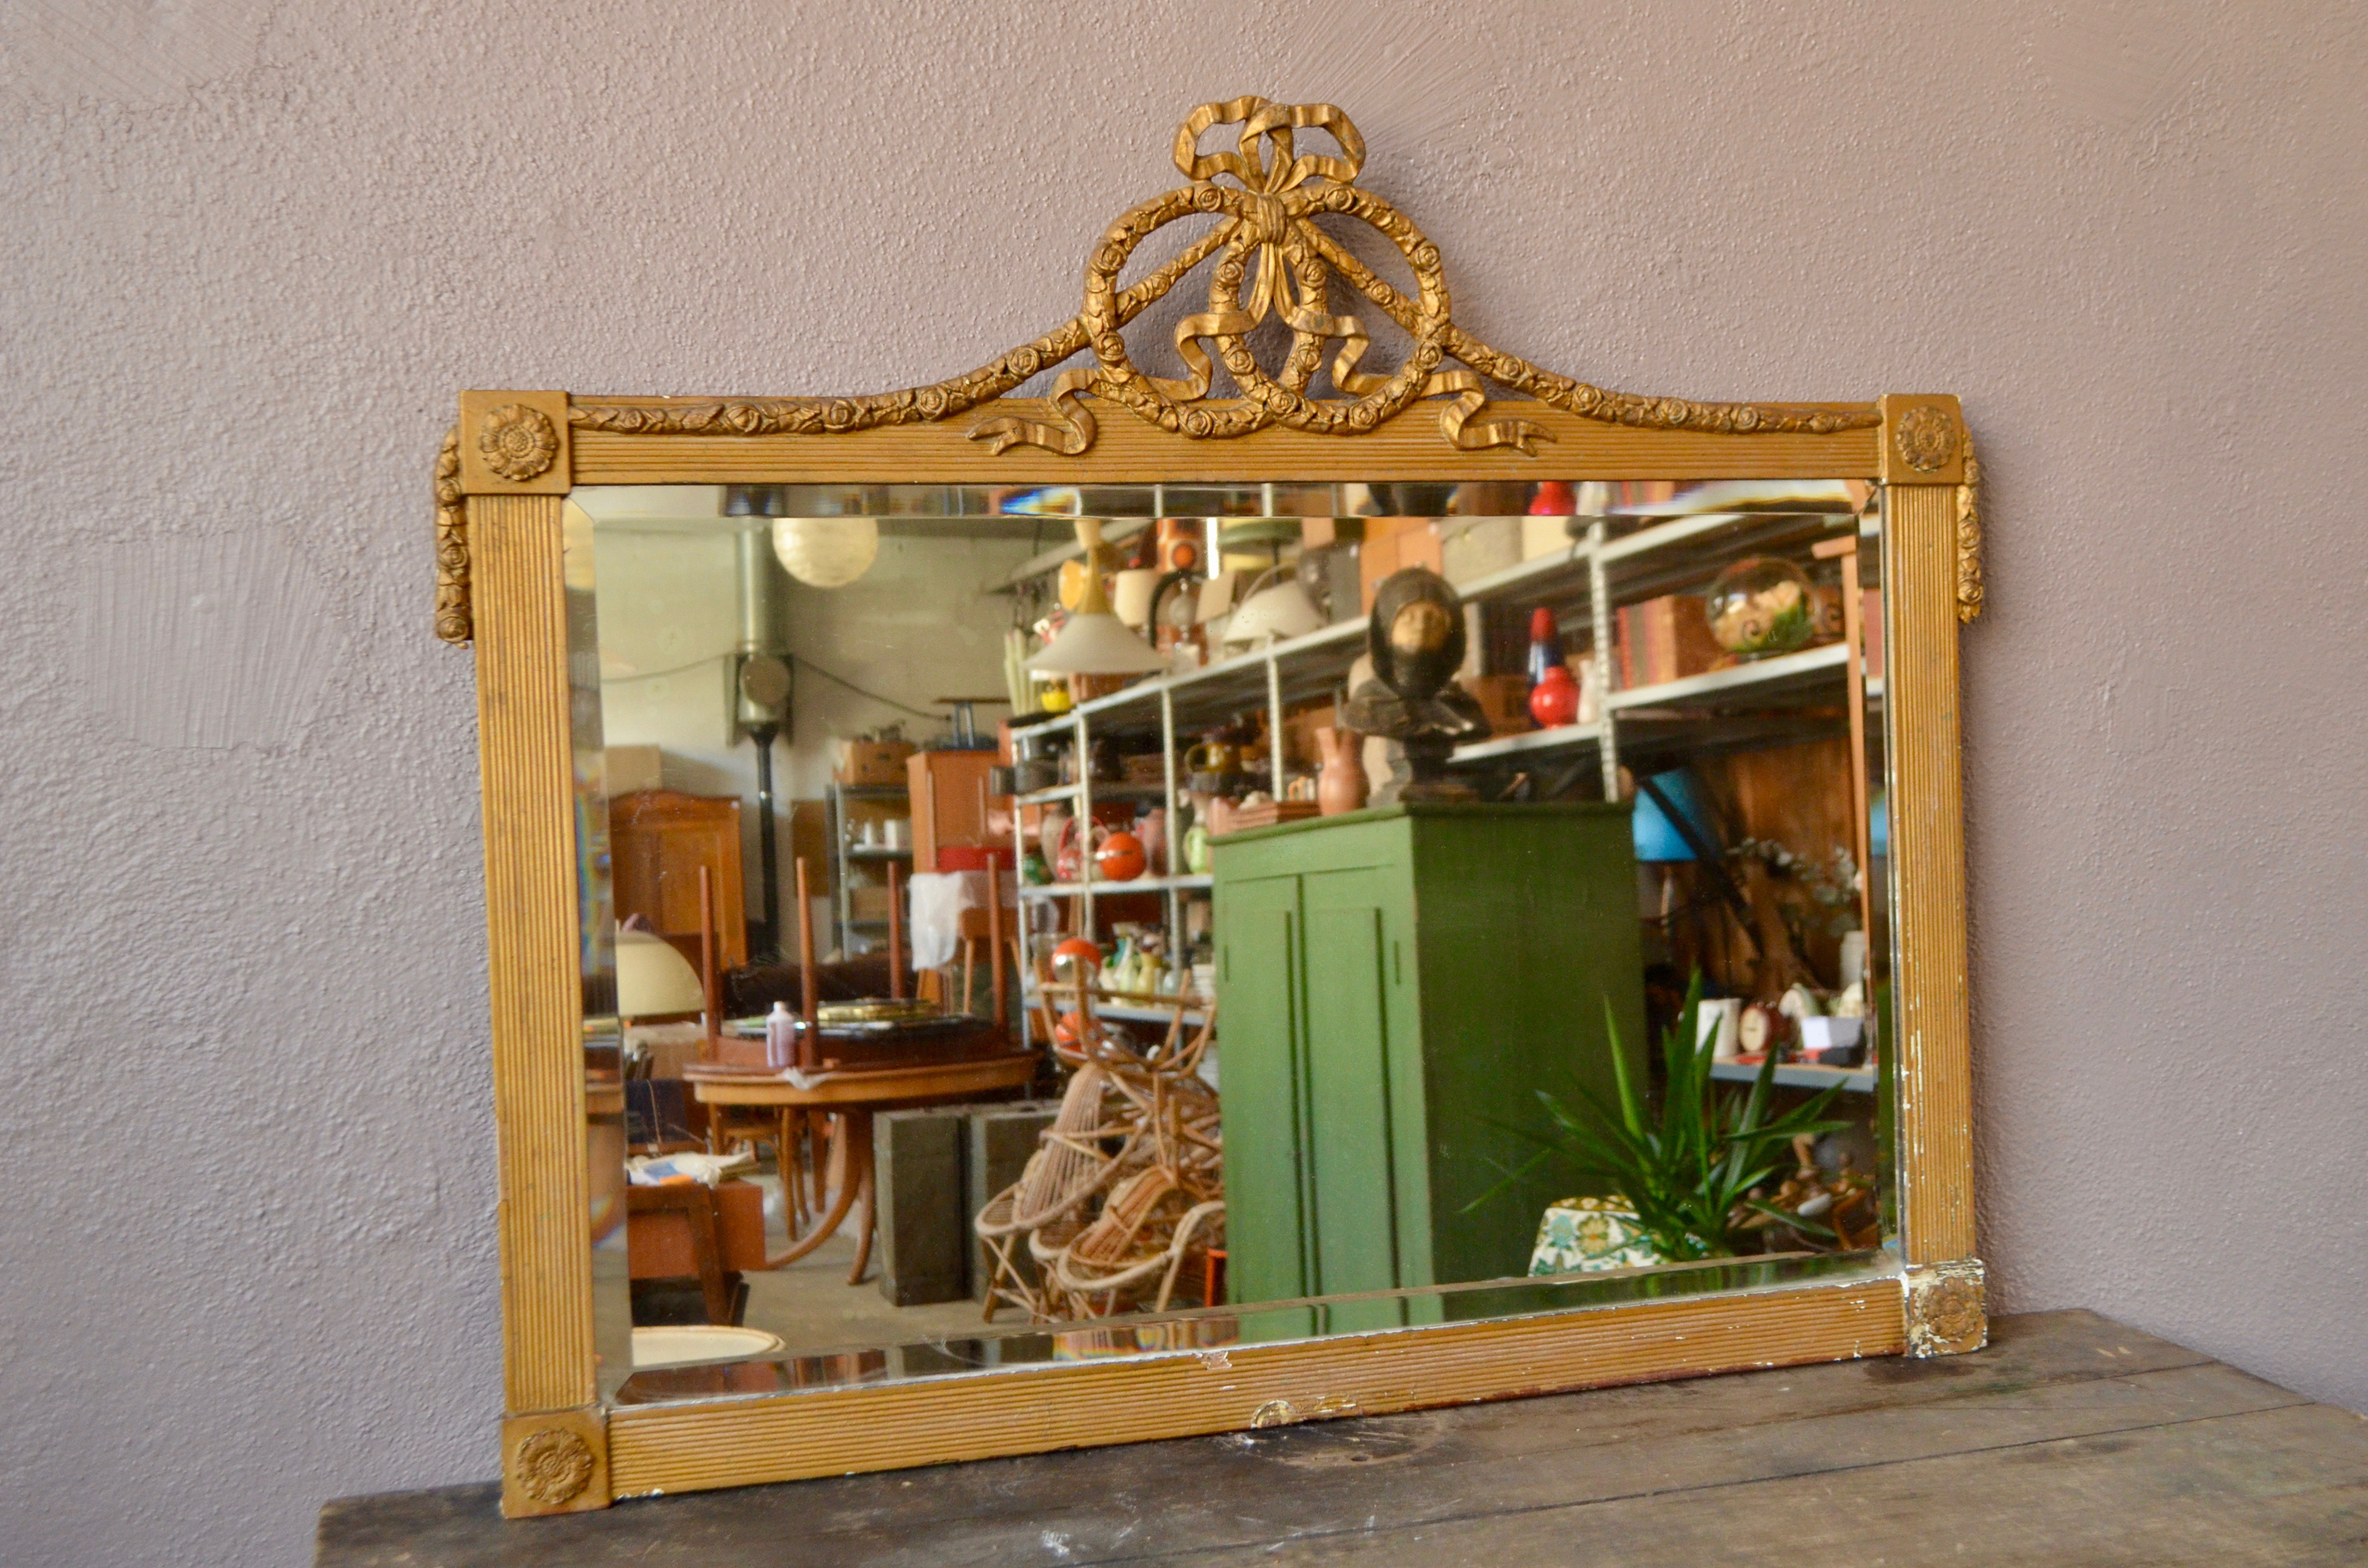 Patine délicieuse viel or, grandes dimensions et fronton à noeud... il n'en fallait pas plus pour nous faire adopter ce grand miroir ancien. Ce grand miroir dit de "cheminé", est donc plutôt destiné à être posé.